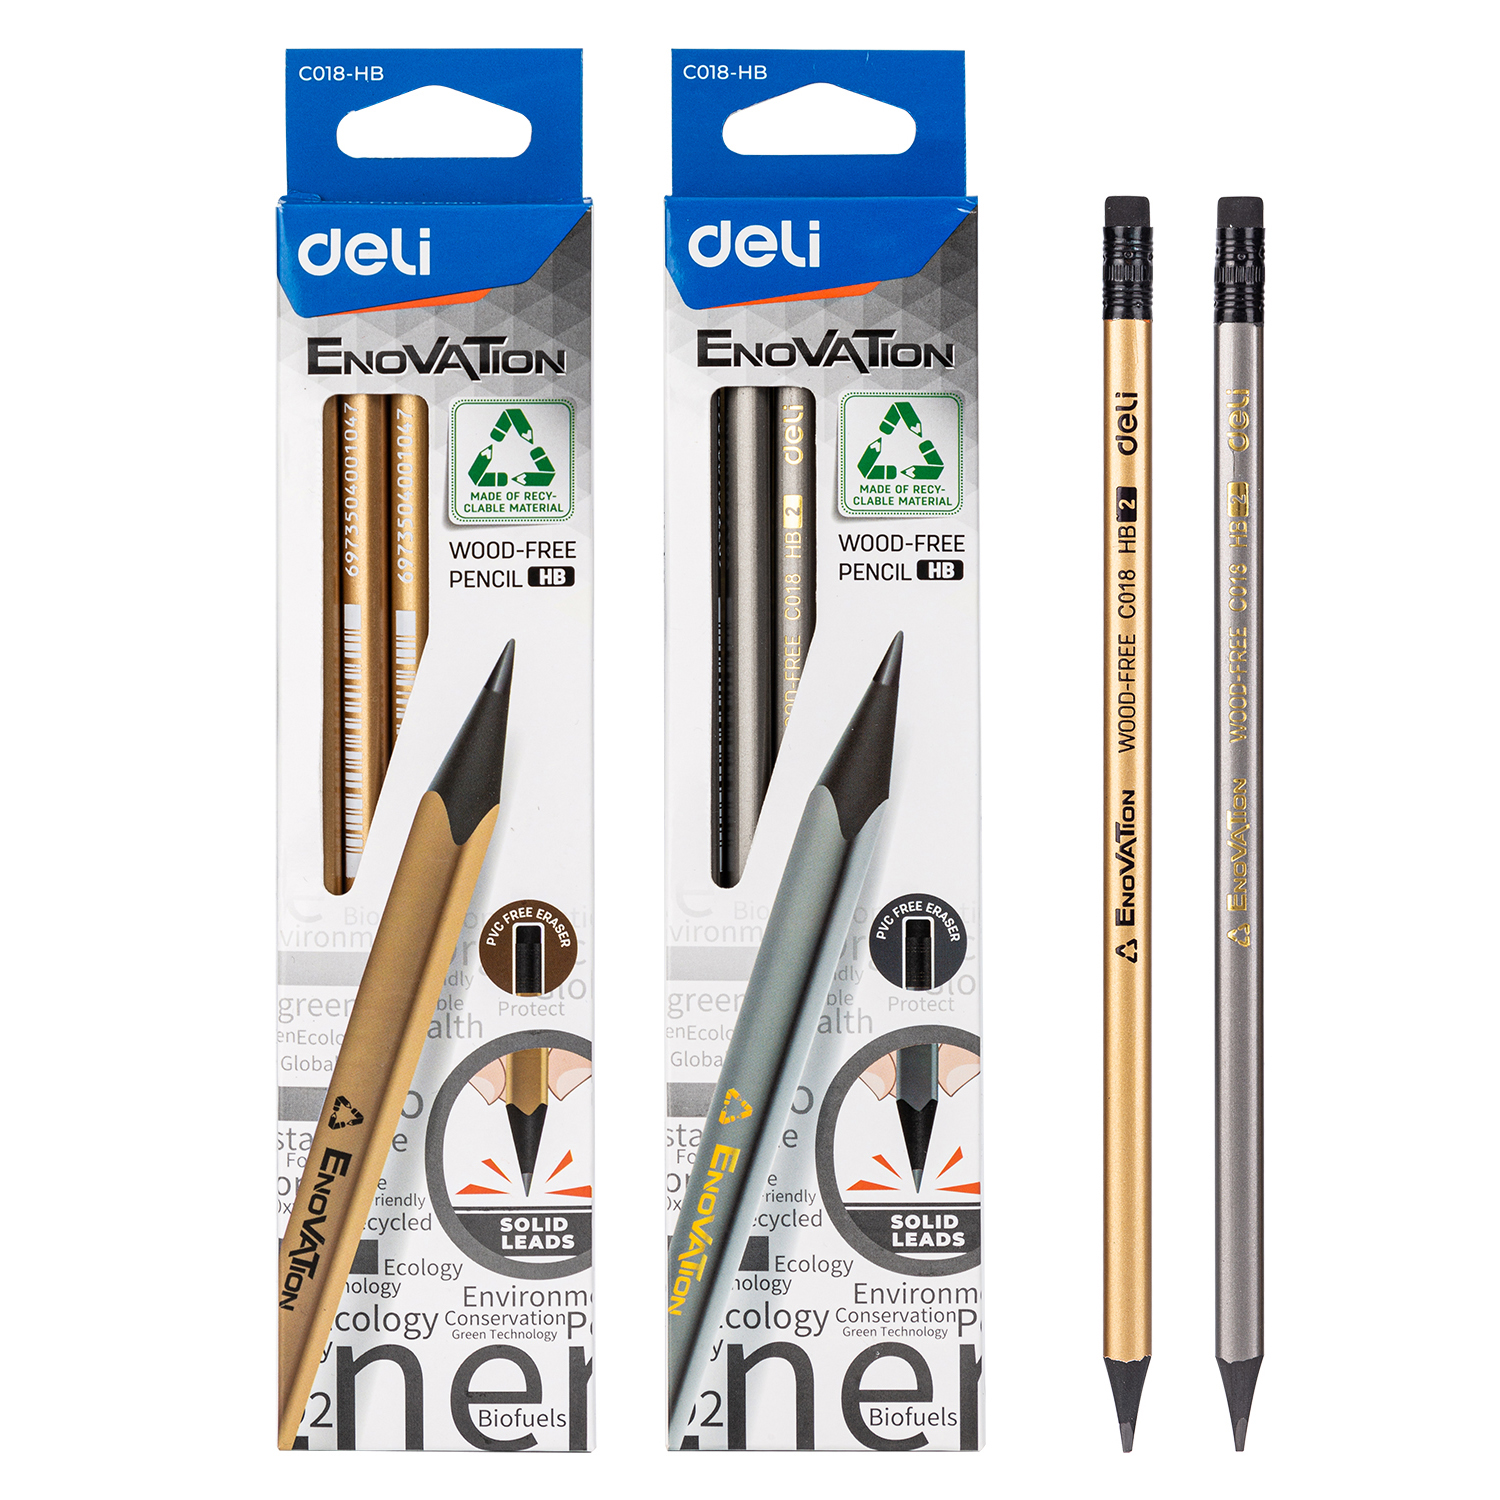 Deli-EC018-HB Pencil